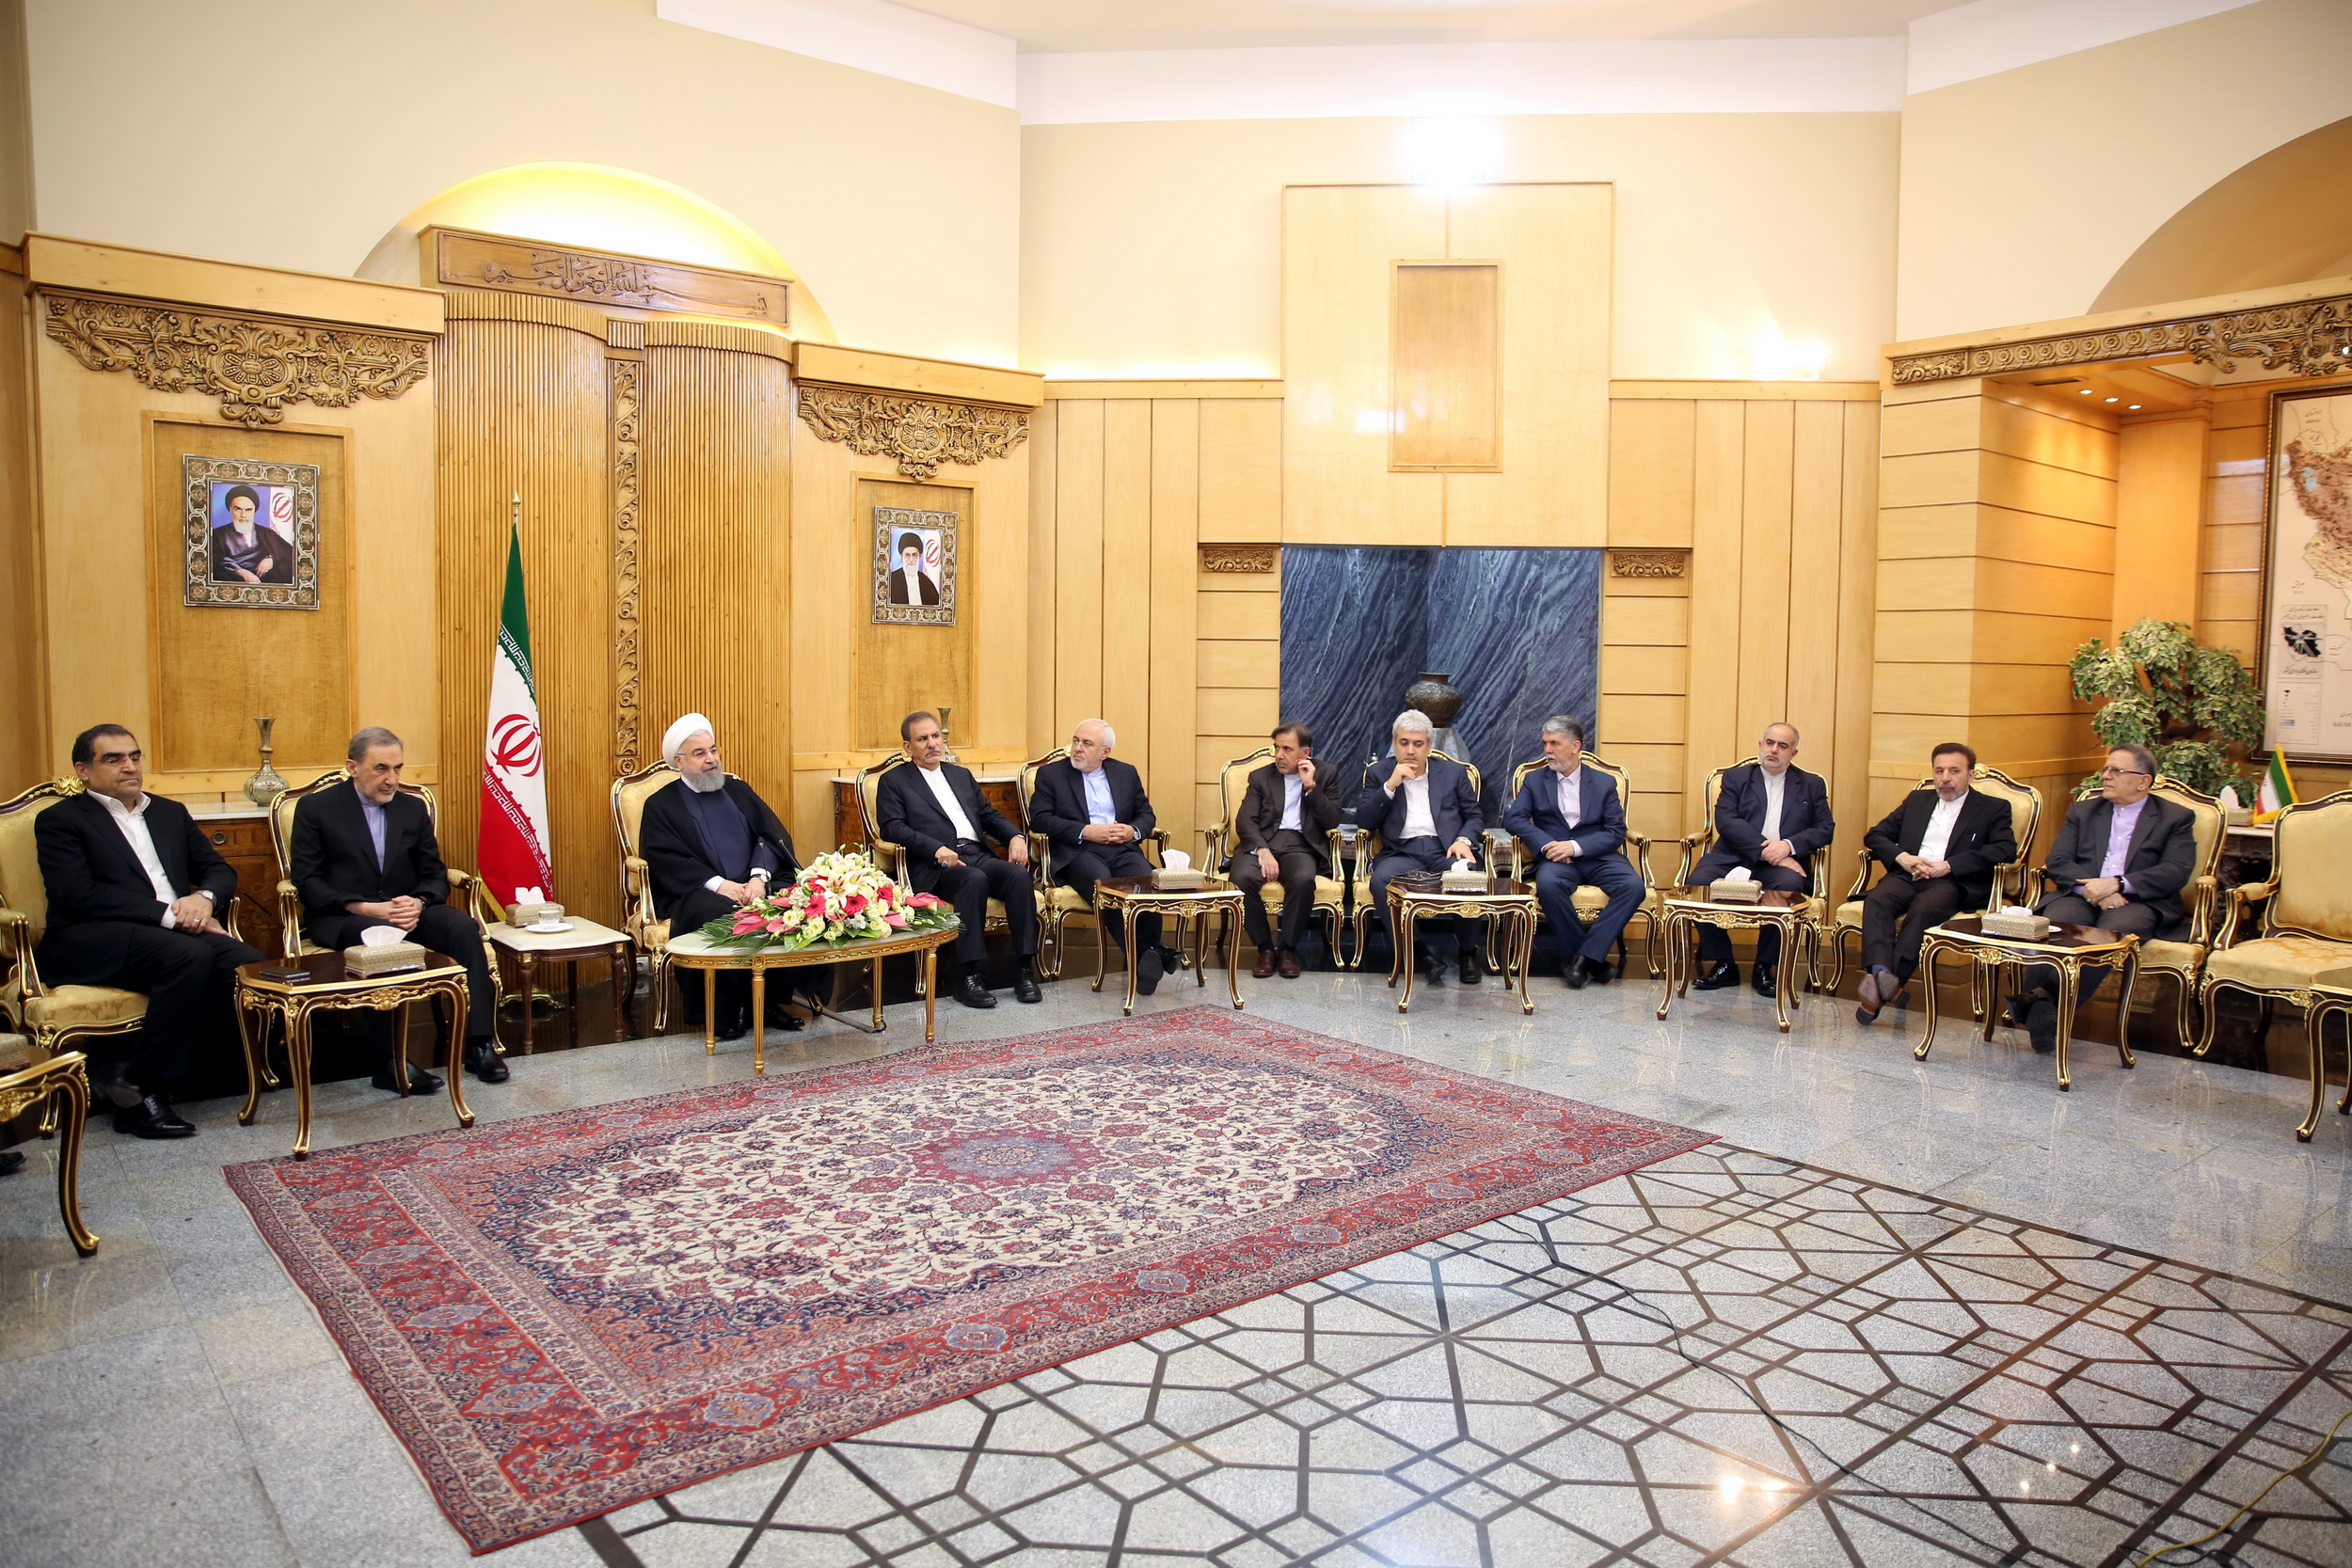 ایران برای تقویت روابط با کشورهای اتحادیه اروپا از جمله سوئیس و اتریش اهمیت فراوانی قائل است